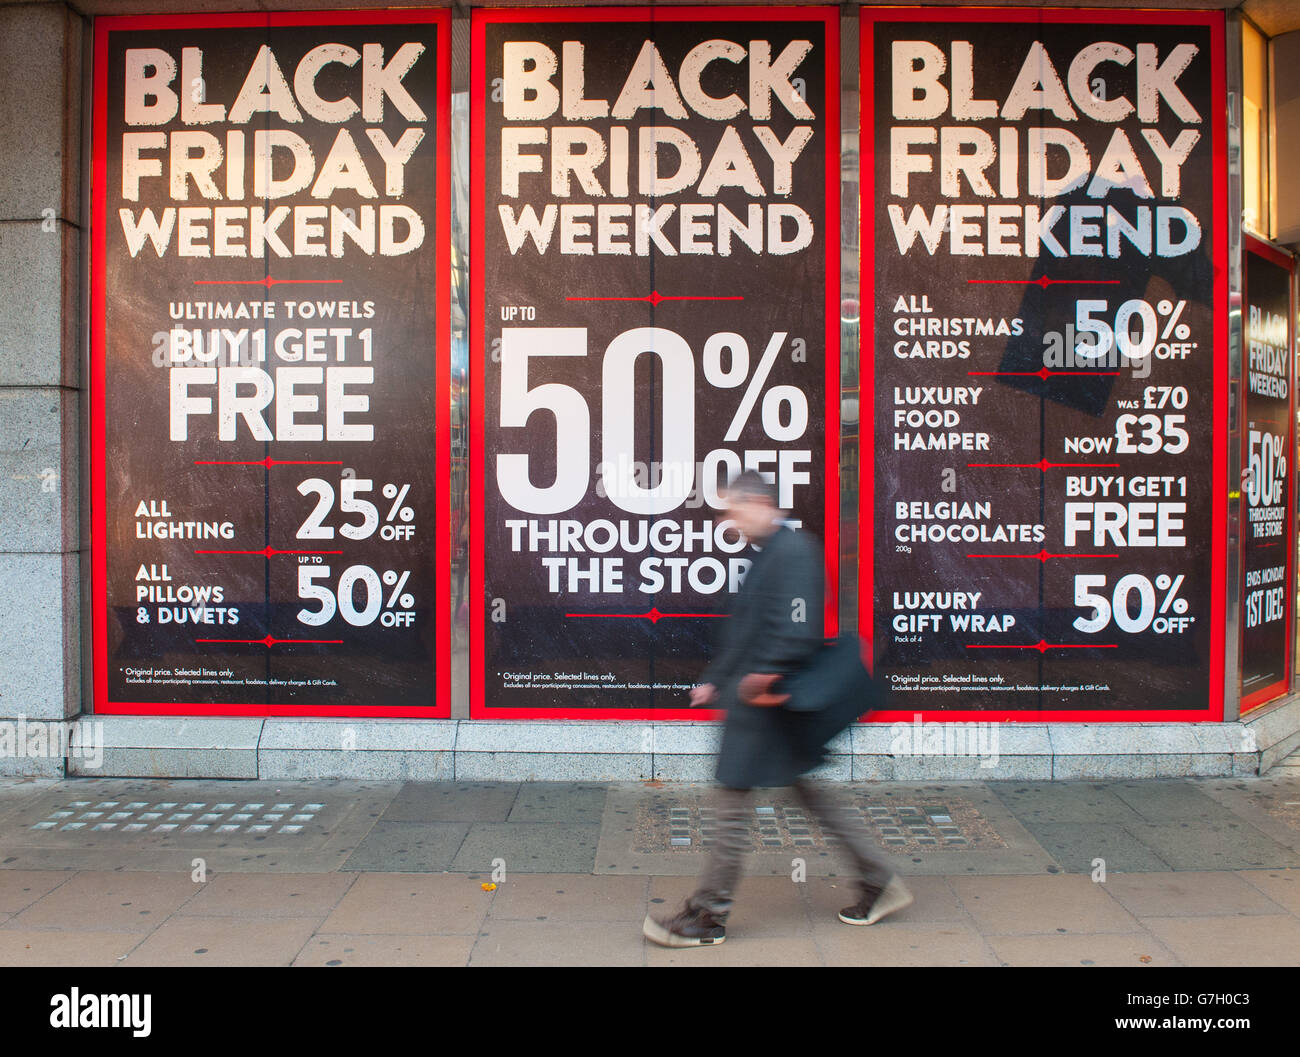 Die Leute kommen an Plakaten vorbei, die auf der Oxford Street, London, für den Verkauf des "Black Friday" werben. Stockfoto